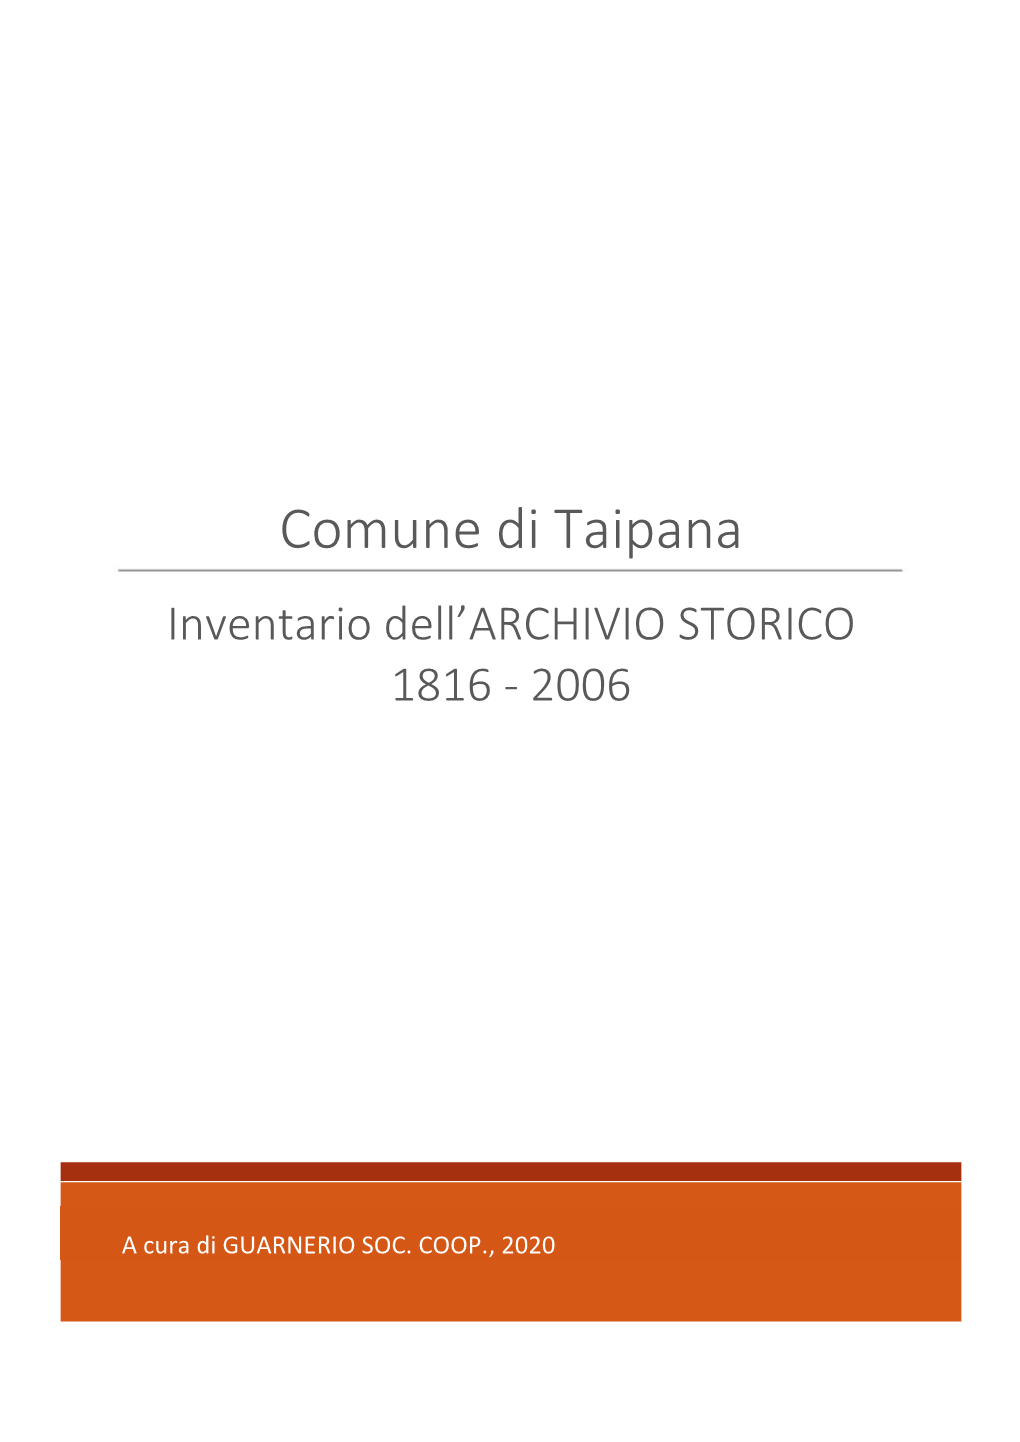 Comune Di Taipana Inventario Dell’ARCHIVIO STORICO 1816 - 2006